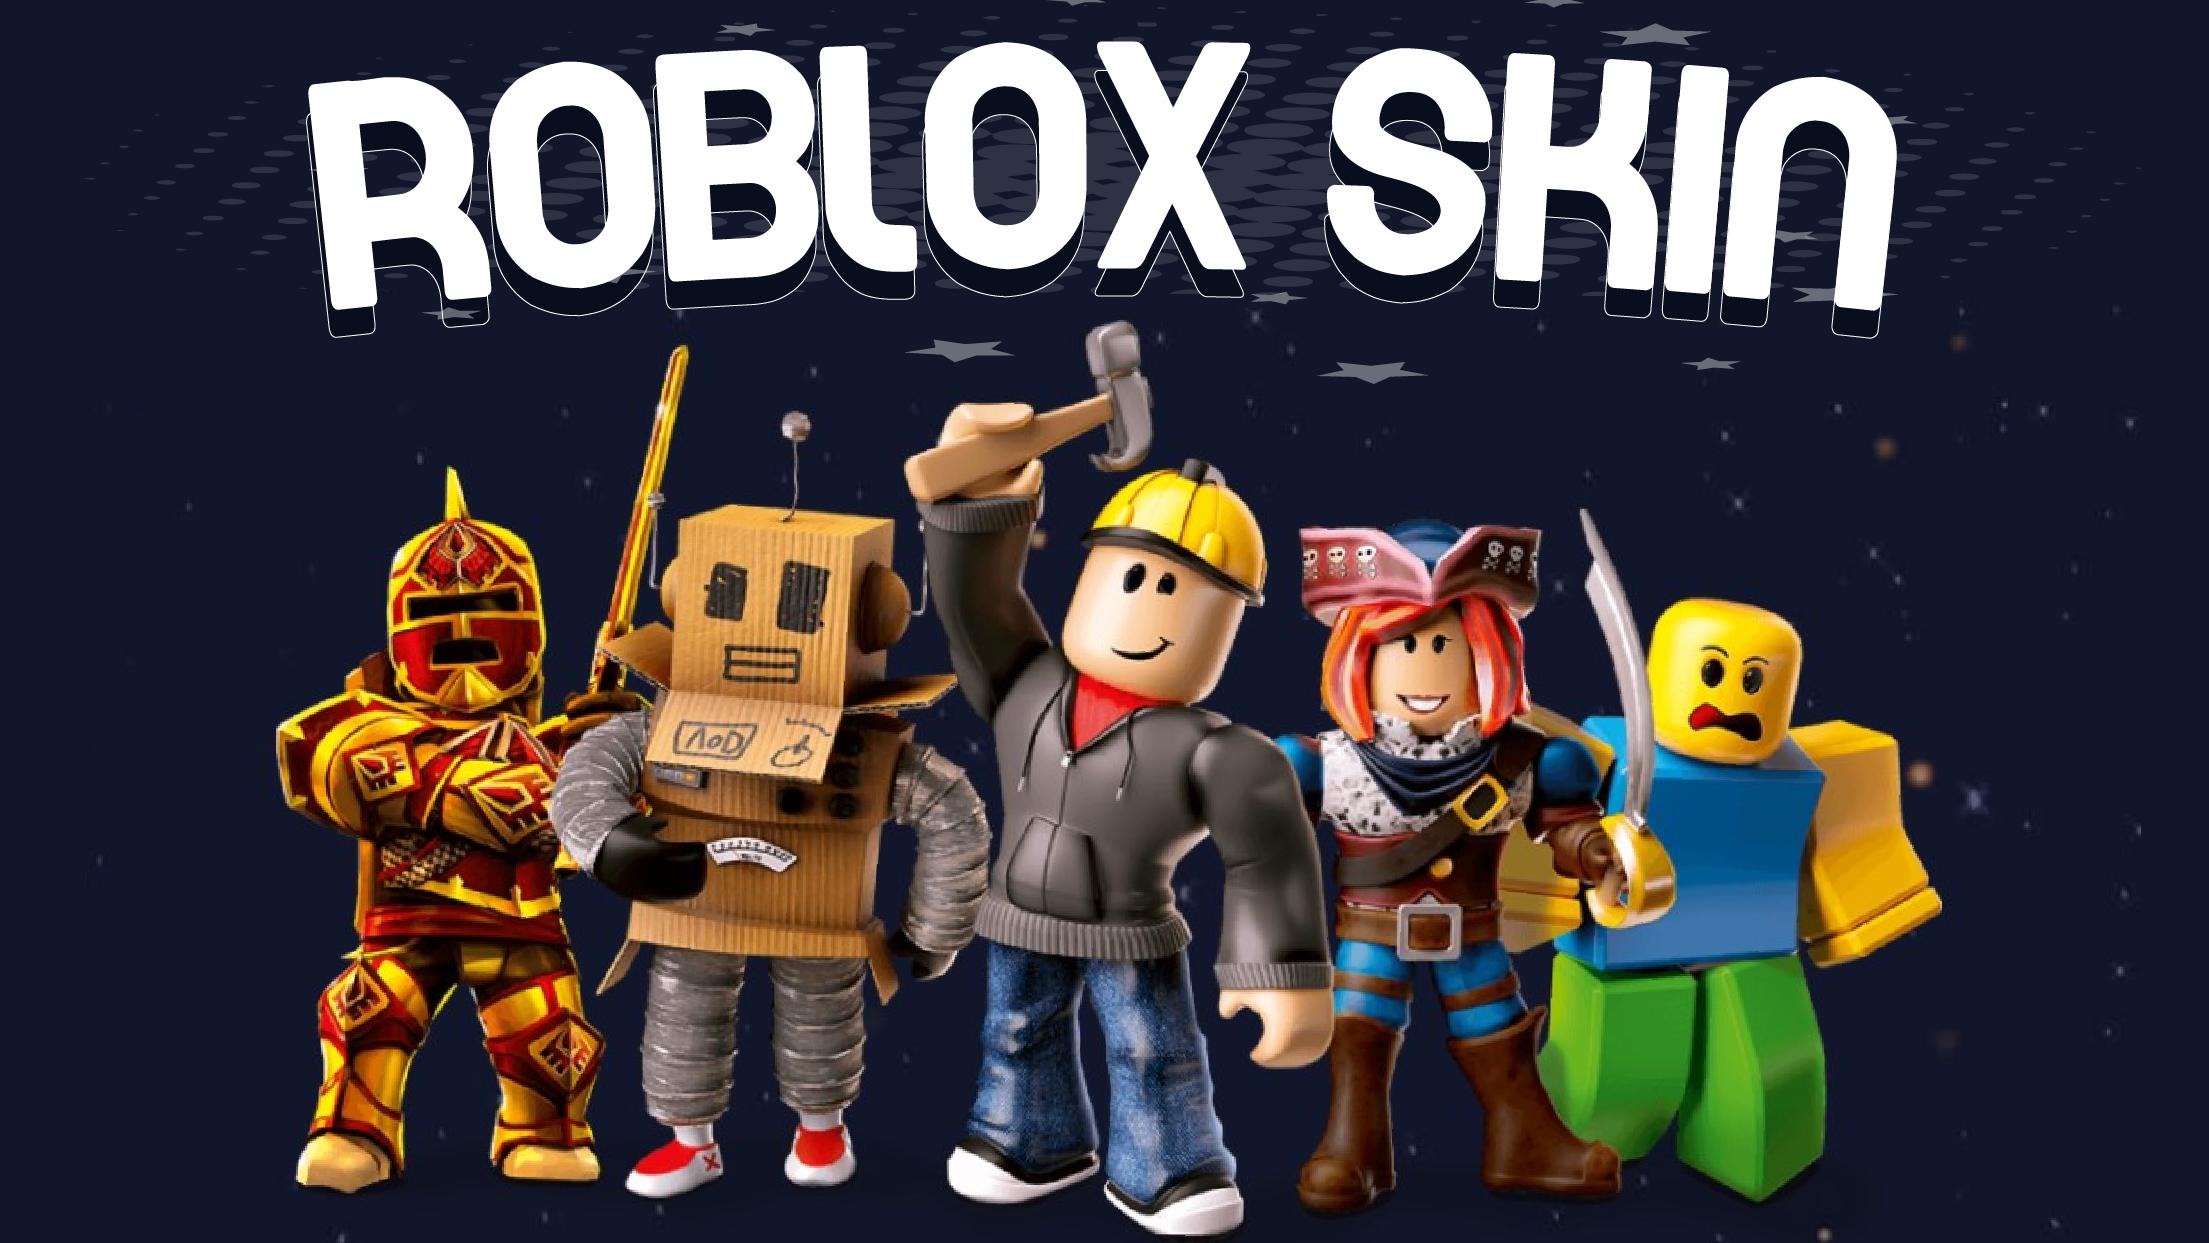 Free Roblox Avatar Skins: Tận hưởng trọn vẹn trò chơi Roblox với vô số loại skins avatar siêu đẹp, siêu cool và siêu độc đáo. Hơn nữa, tất cả đều miễn phí! Chỉ cần bấm vào đây để tìm kiếm skins yêu thích của bạn và điều chỉnh cho avatar của bạn trở nên thật phong cách.